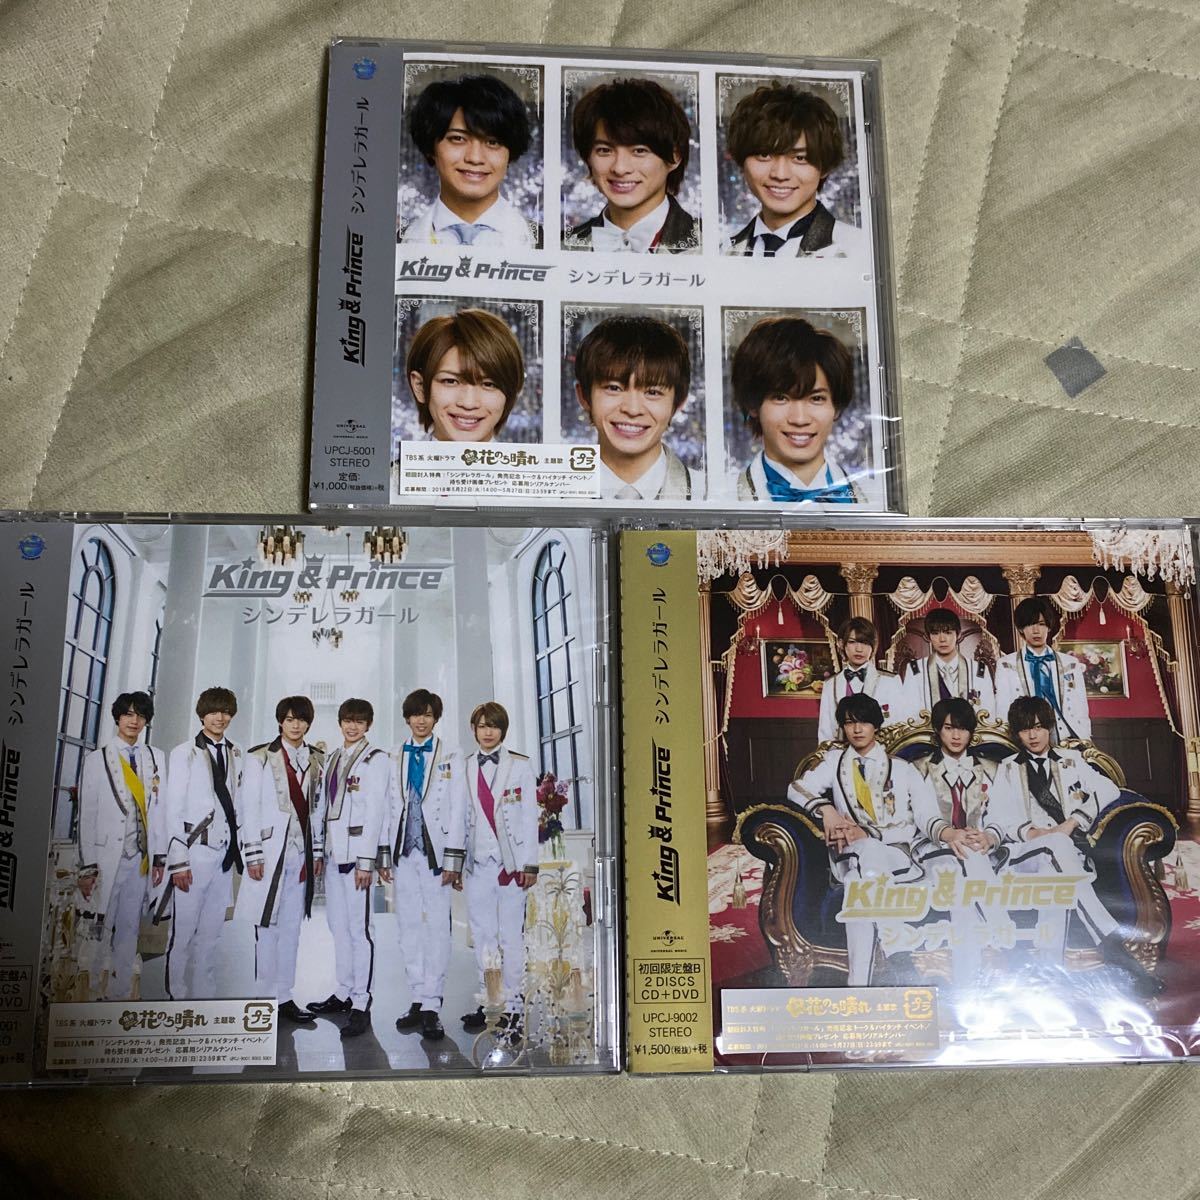 King&Prince / シンデレラガール３形態 CD+DVD《新品未開封》特典 